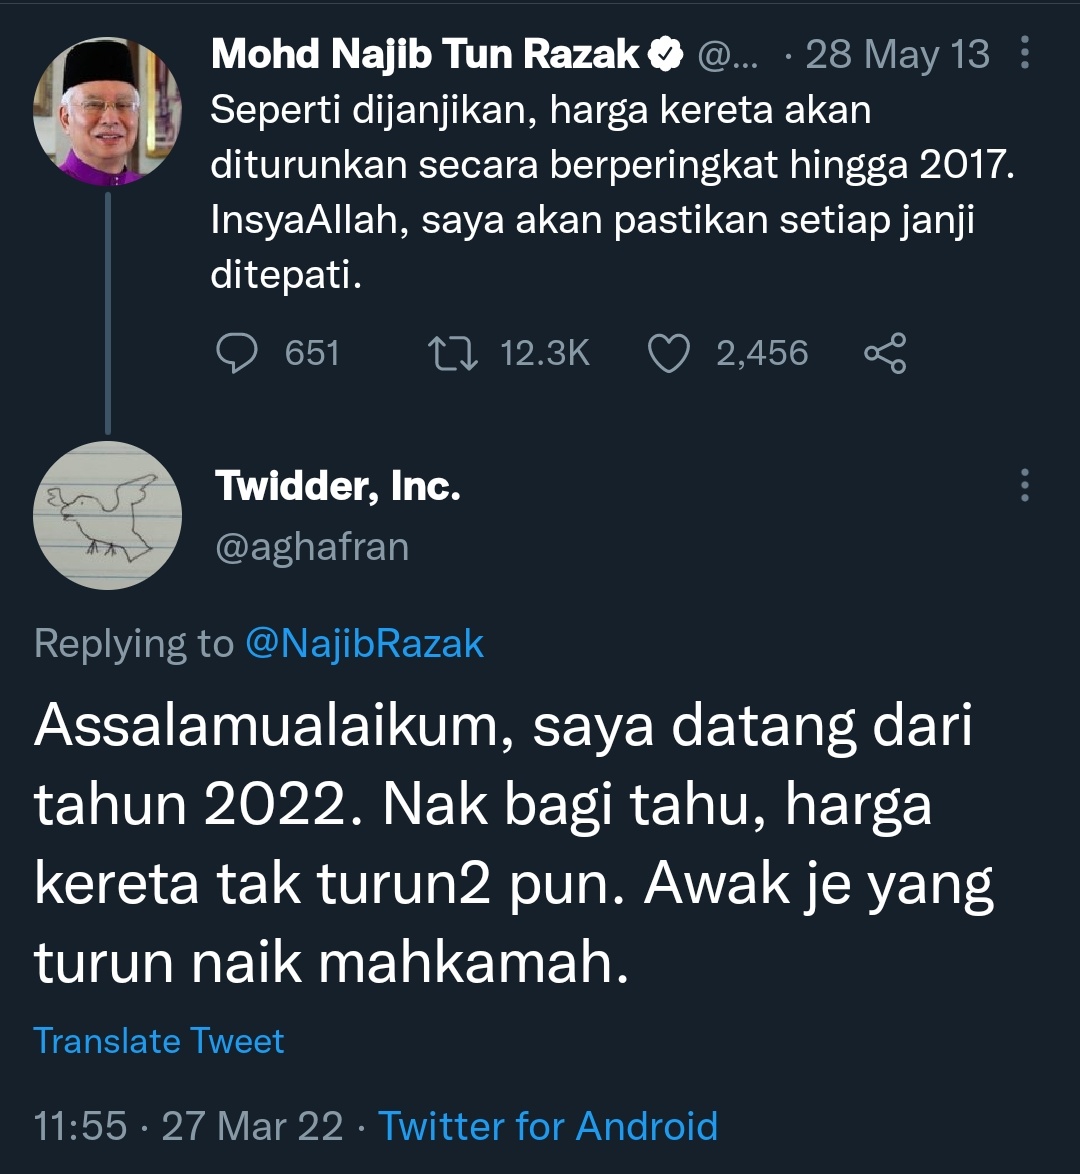 Translate assalamualaikum from malay